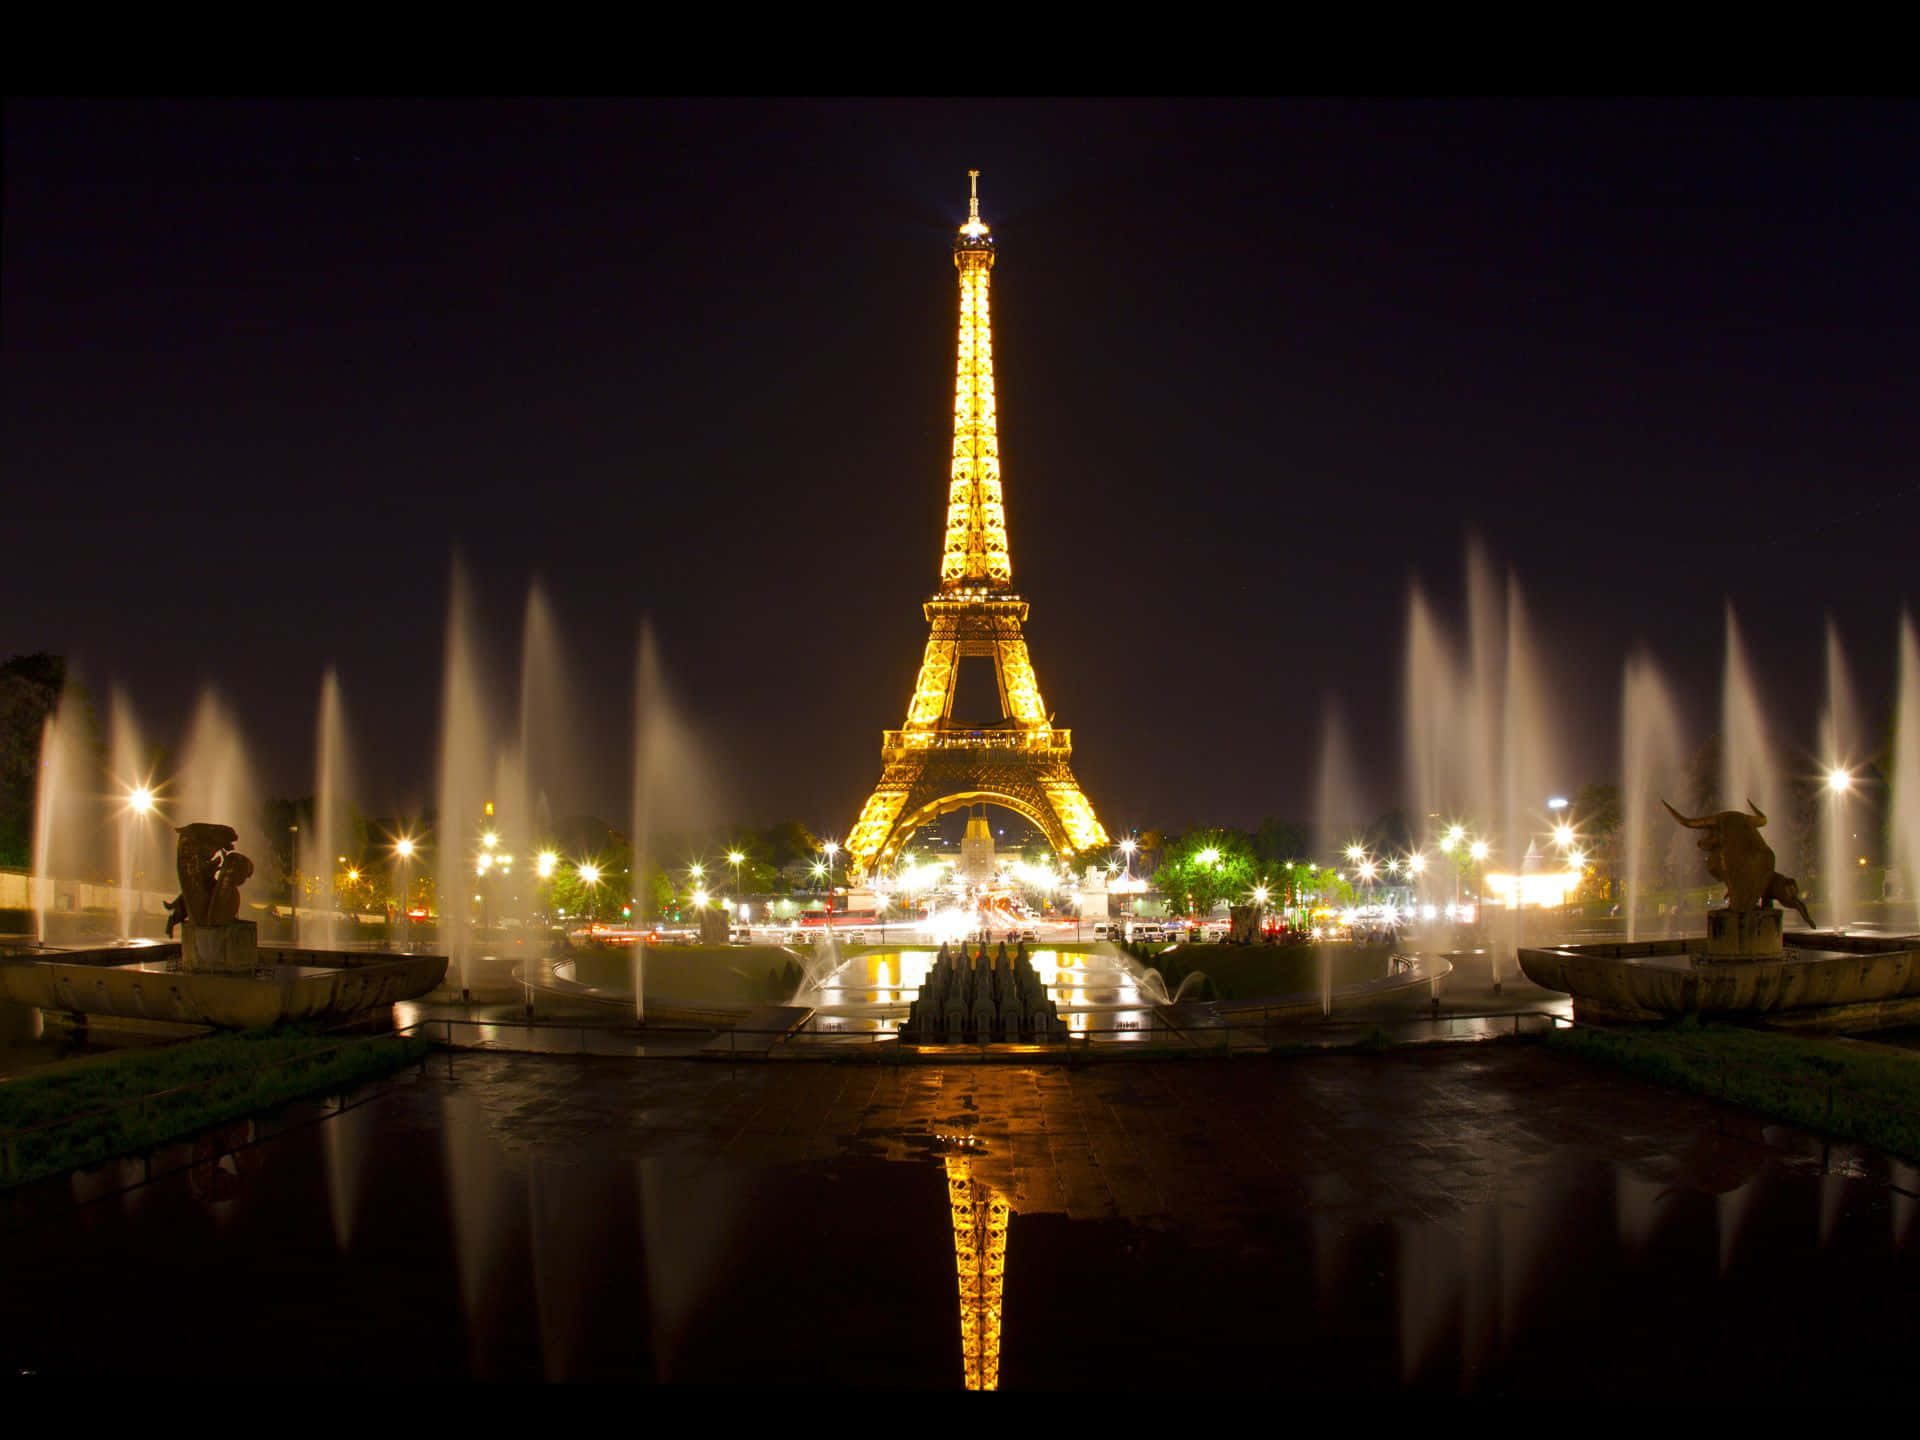 Imágenes De La Torre Eiffel De Noche